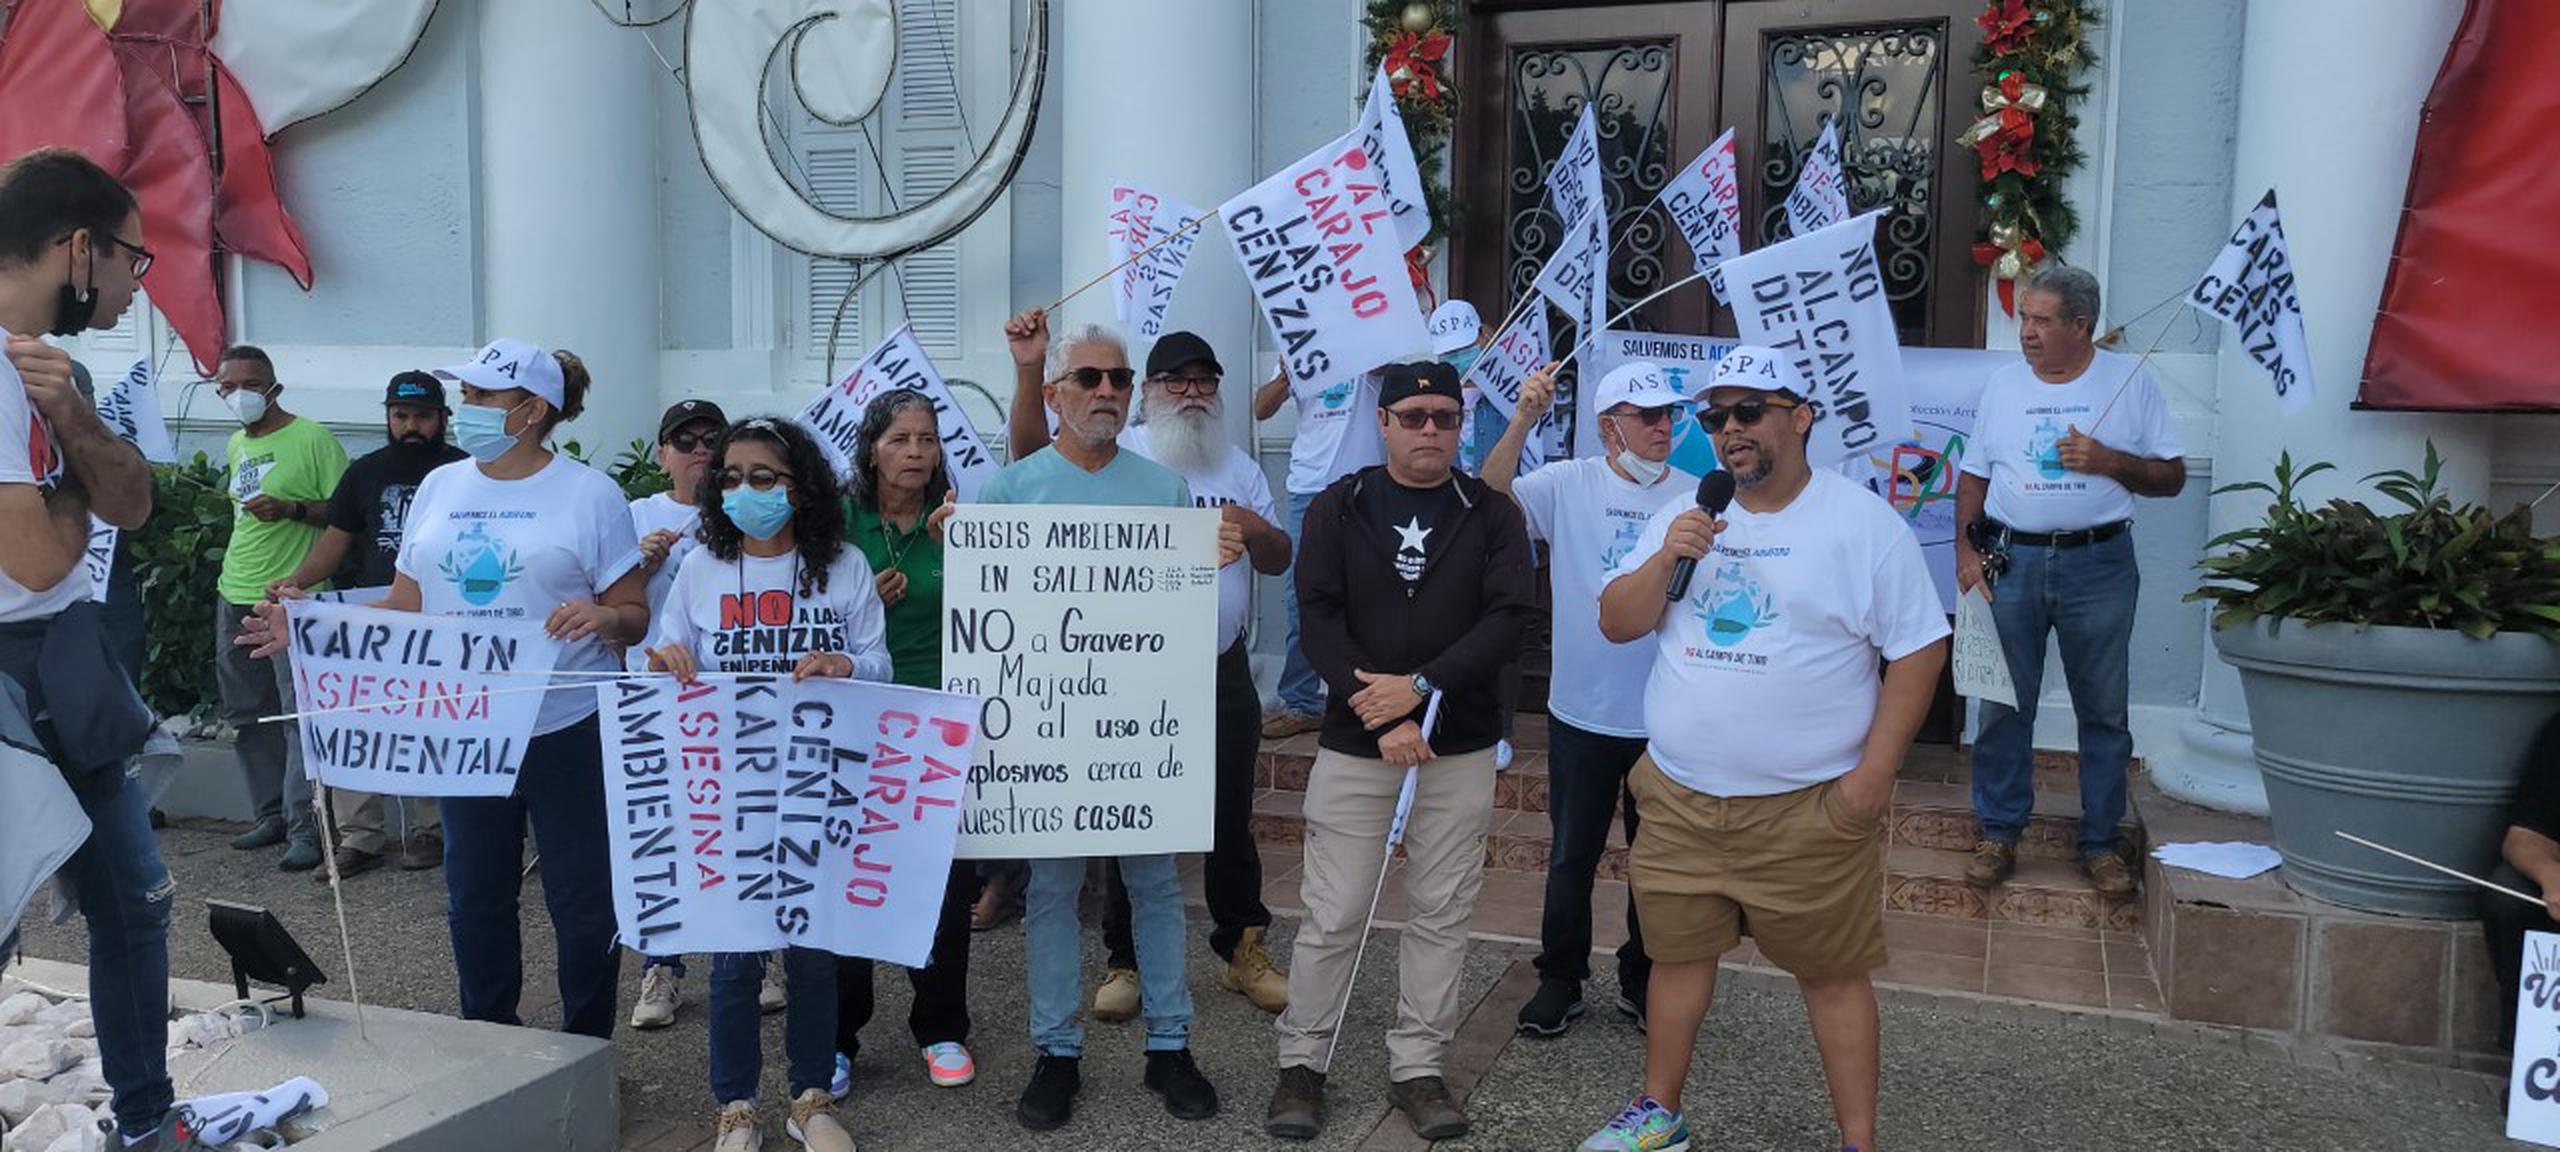 Un grupo de ciudadanos se manifestó en contra de la alcaldesa de Salinas, Karilyn Bonilla Colón, a quien acusan de querer llevar cenizas tóxicas a varios pueblos y de inclumplir con remover ese material de las calles de una comunidad.